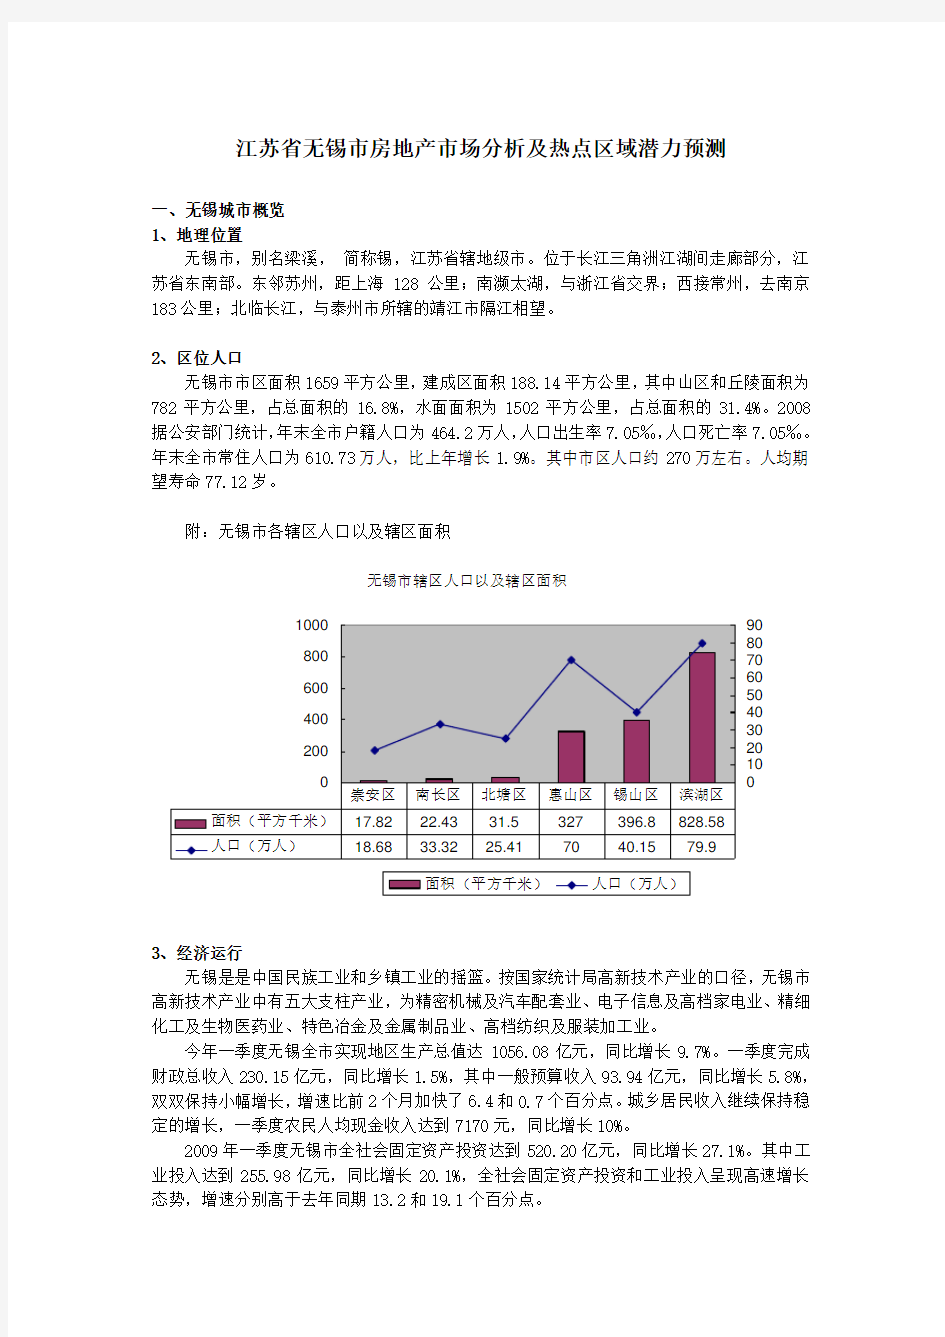 江苏省无锡市房地产市场分析